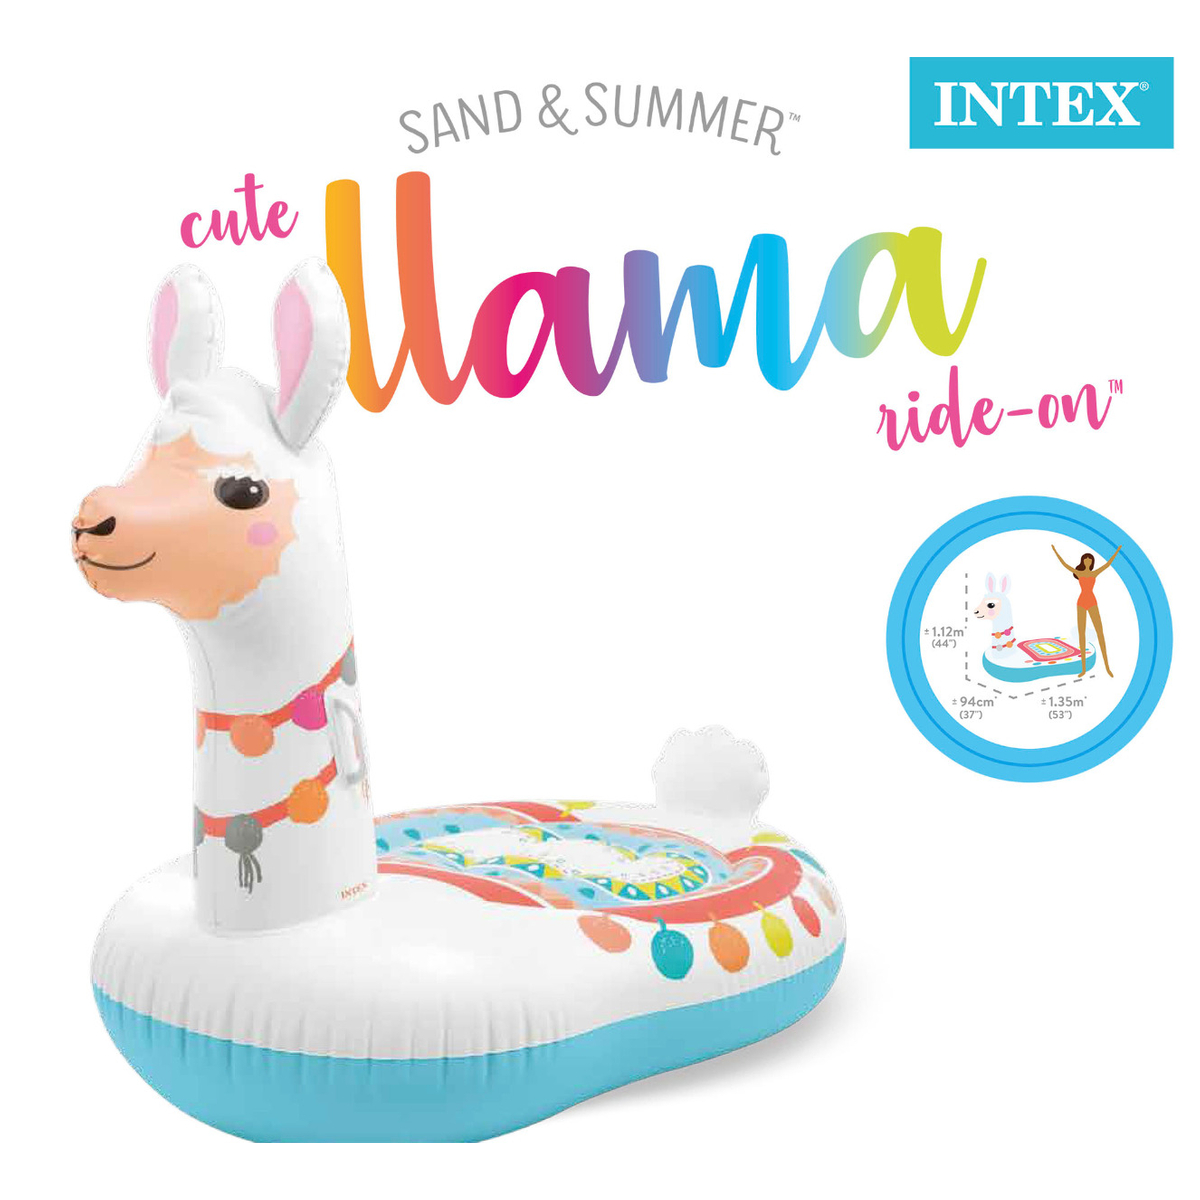 Intex Ride-on Opblaasbare Lama